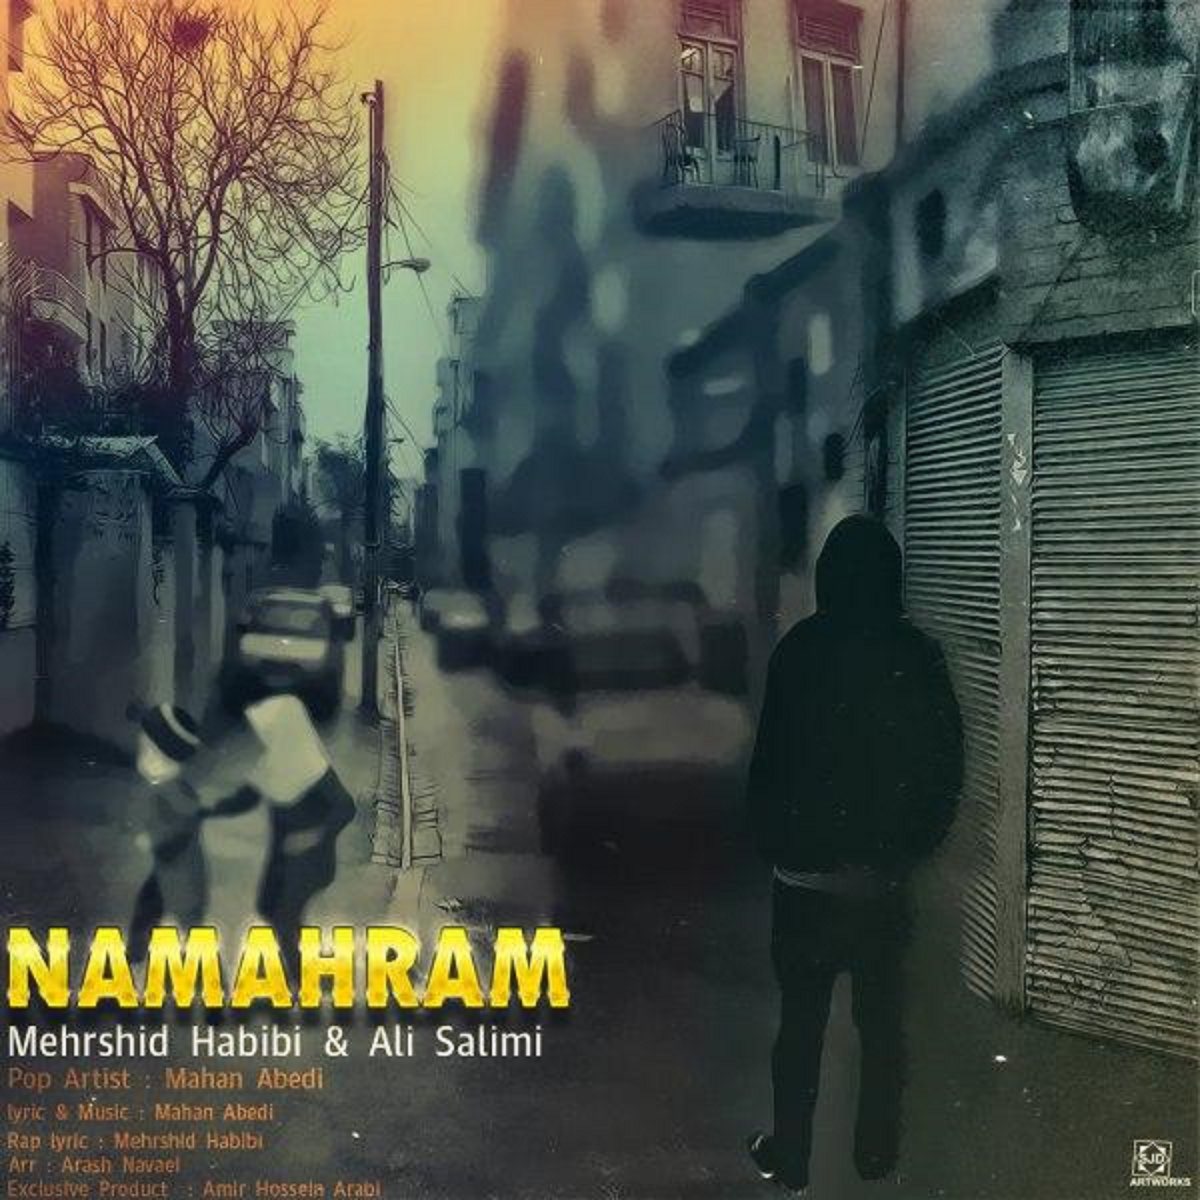 Habibi Ali. Картинка с альбома Peyman Salimi без надписей. Хабиби песня Гасан.